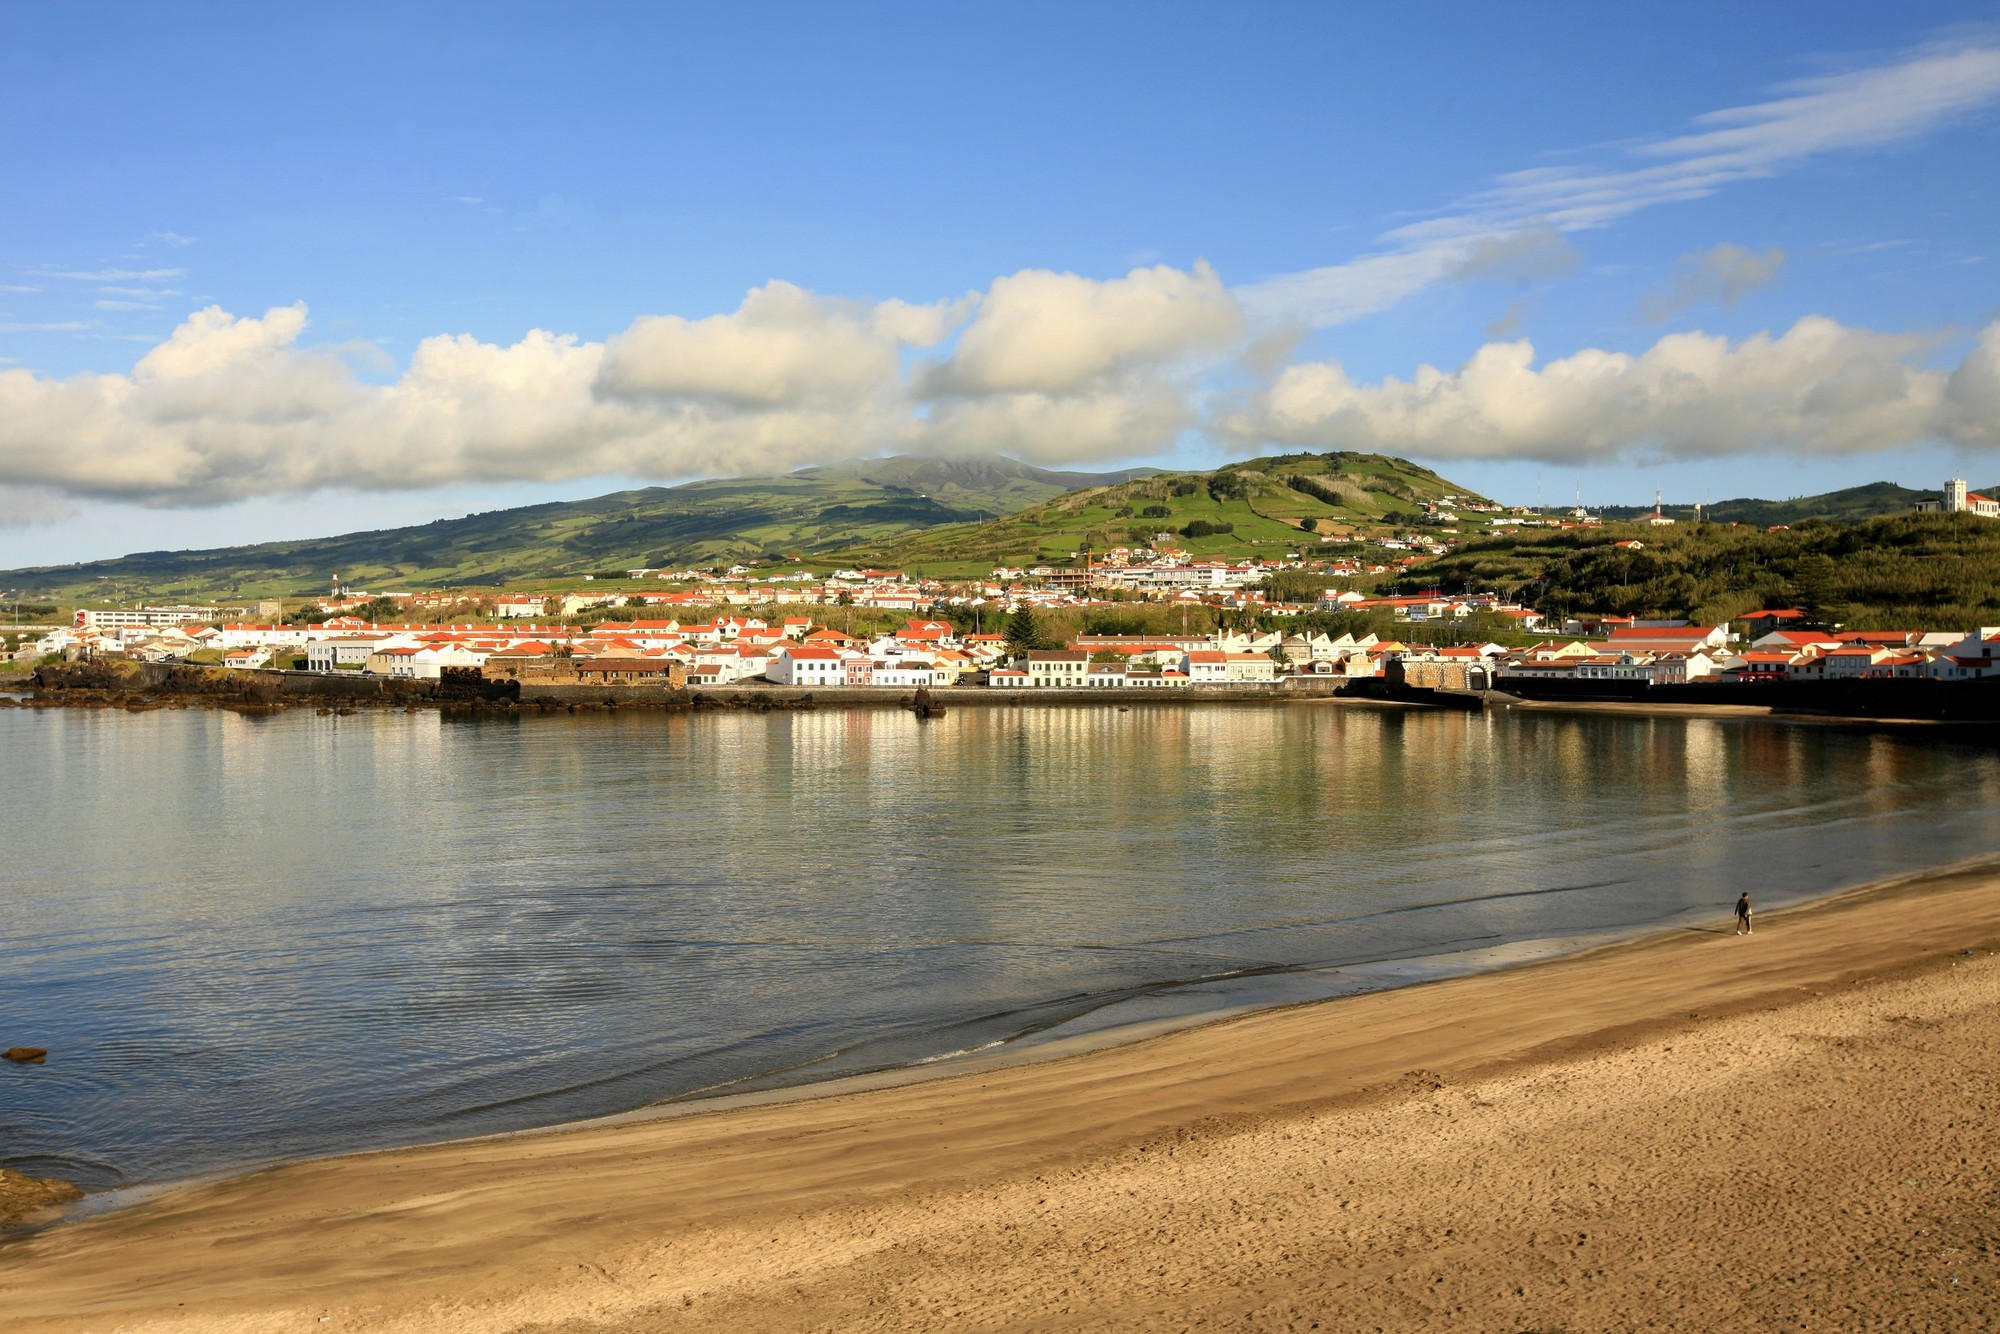 De kleine stad Horta, hoofdstad van het eiland Faial